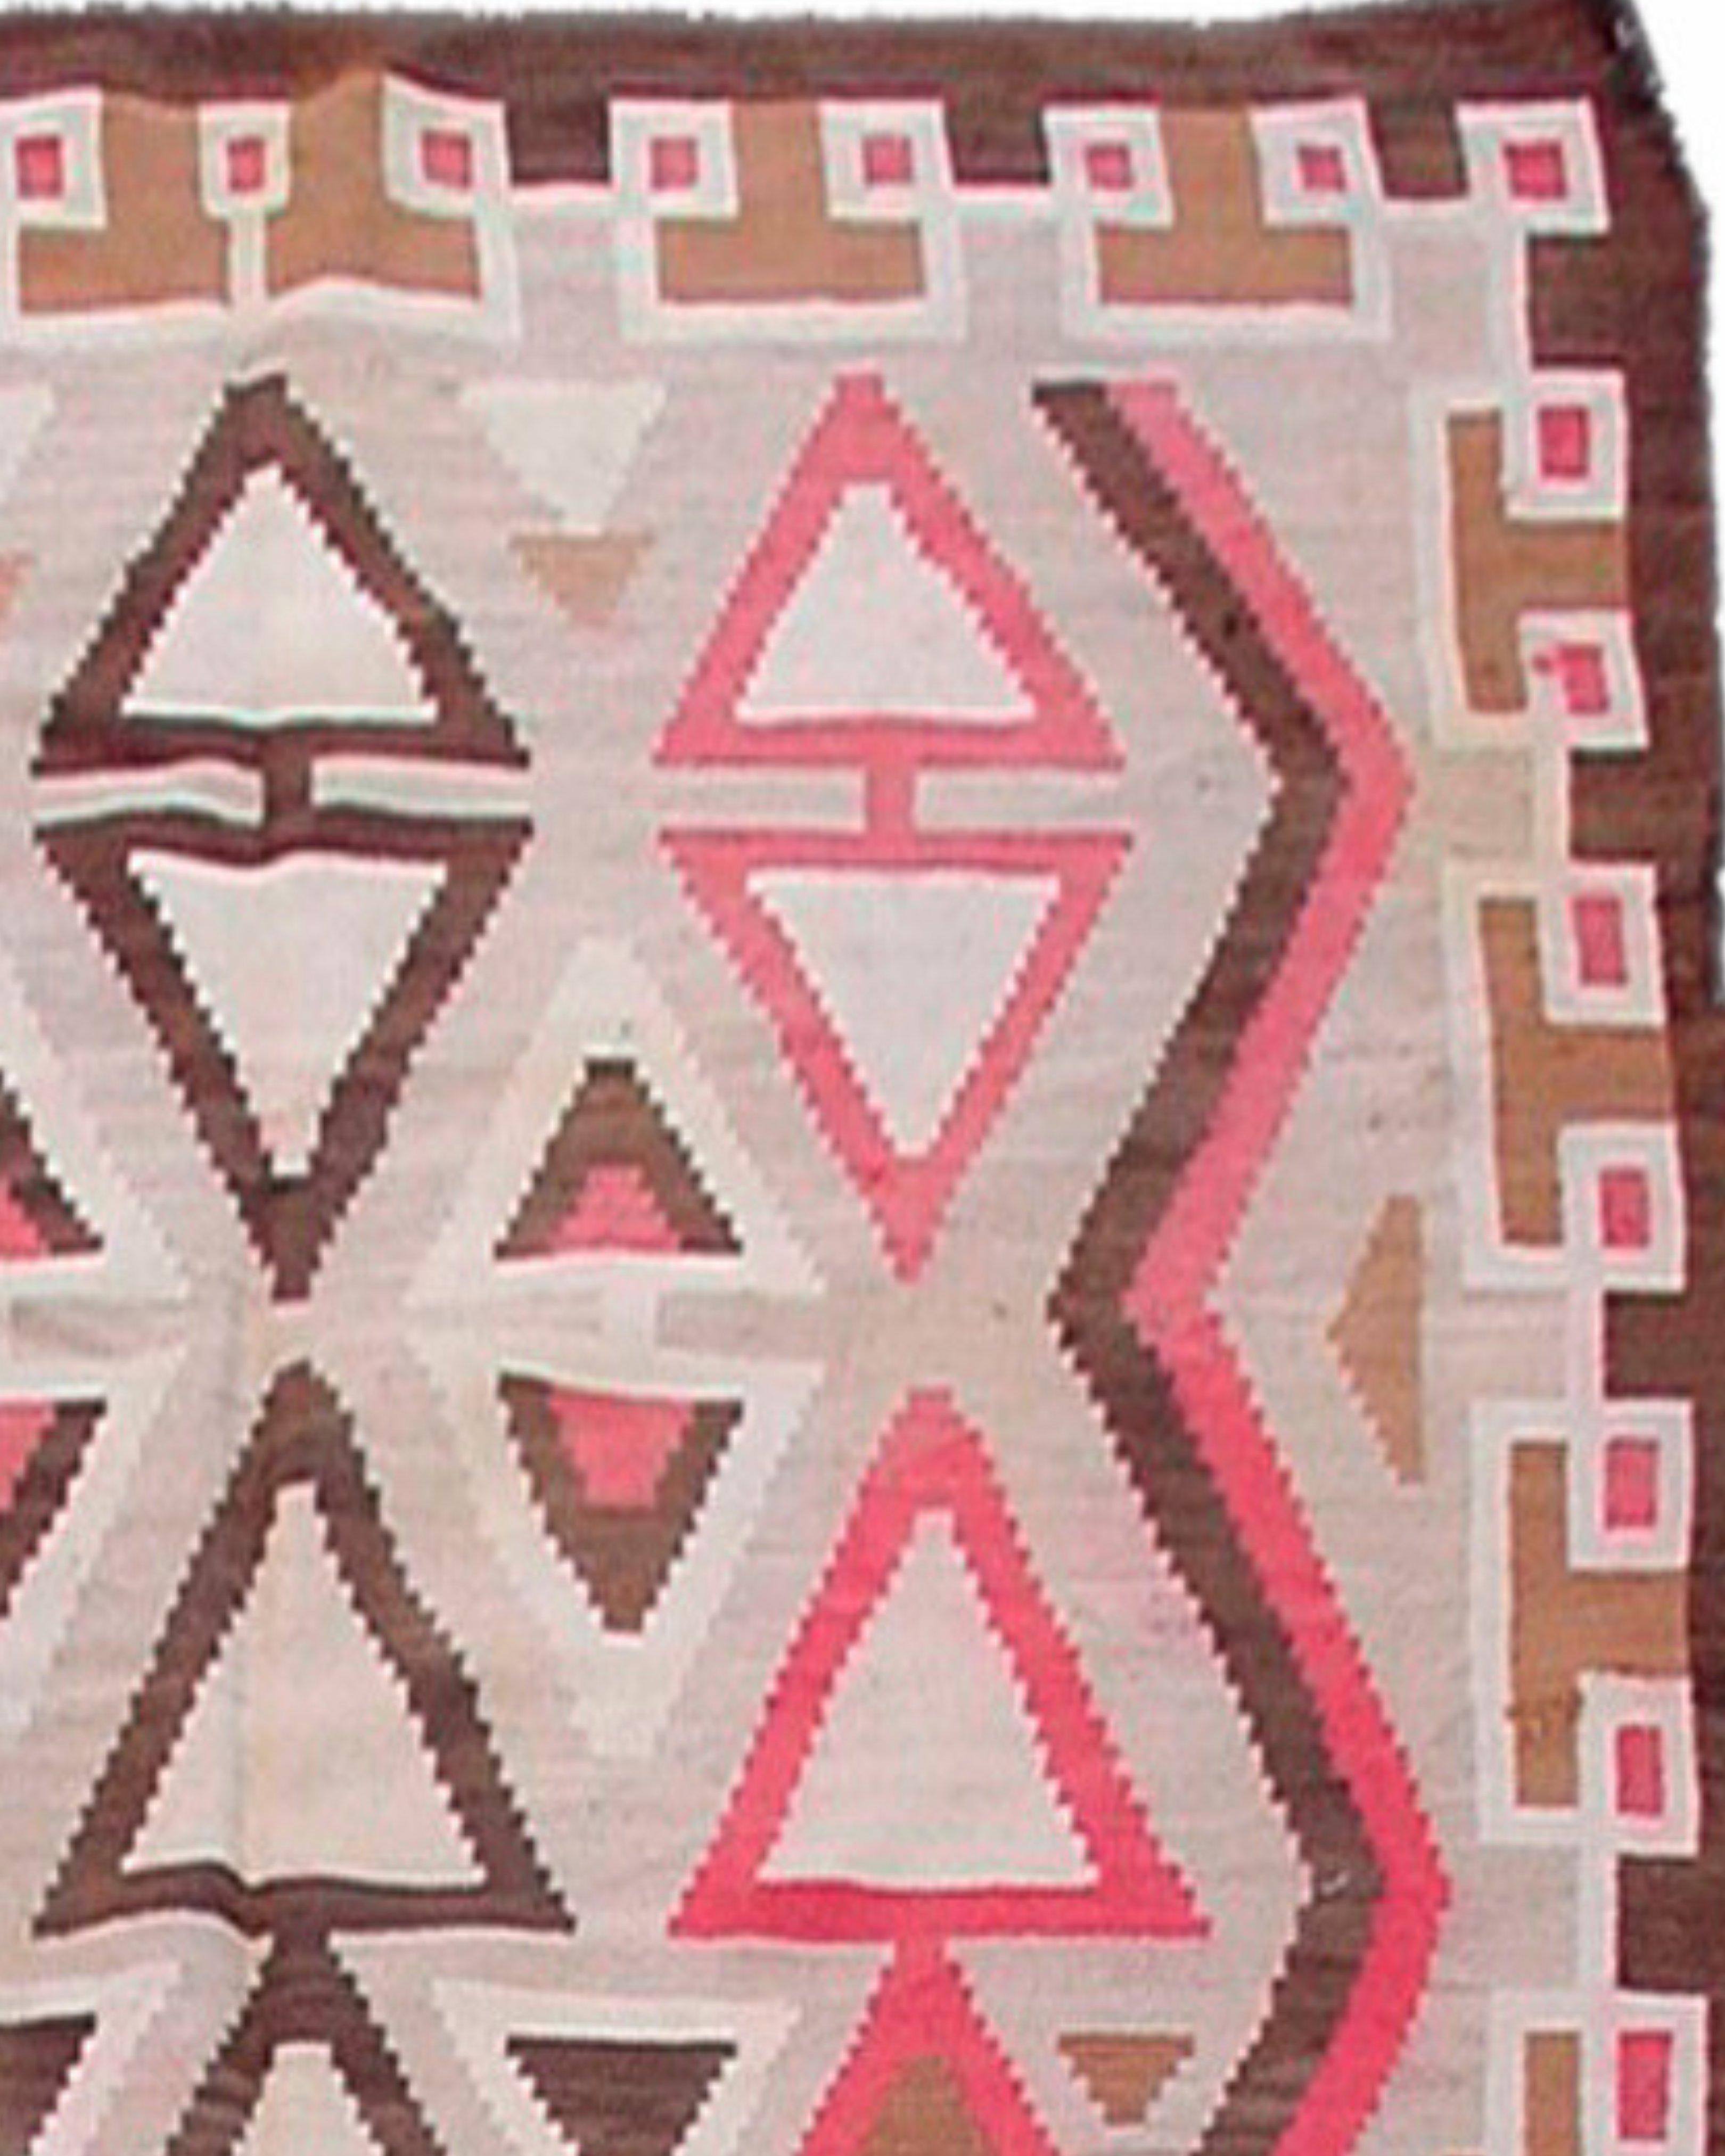 Antiker handgewebter Navajo-Teppich, frühes 20. Jahrhundert

Zusätzliche Informationen:
Abmessungen: 6'3